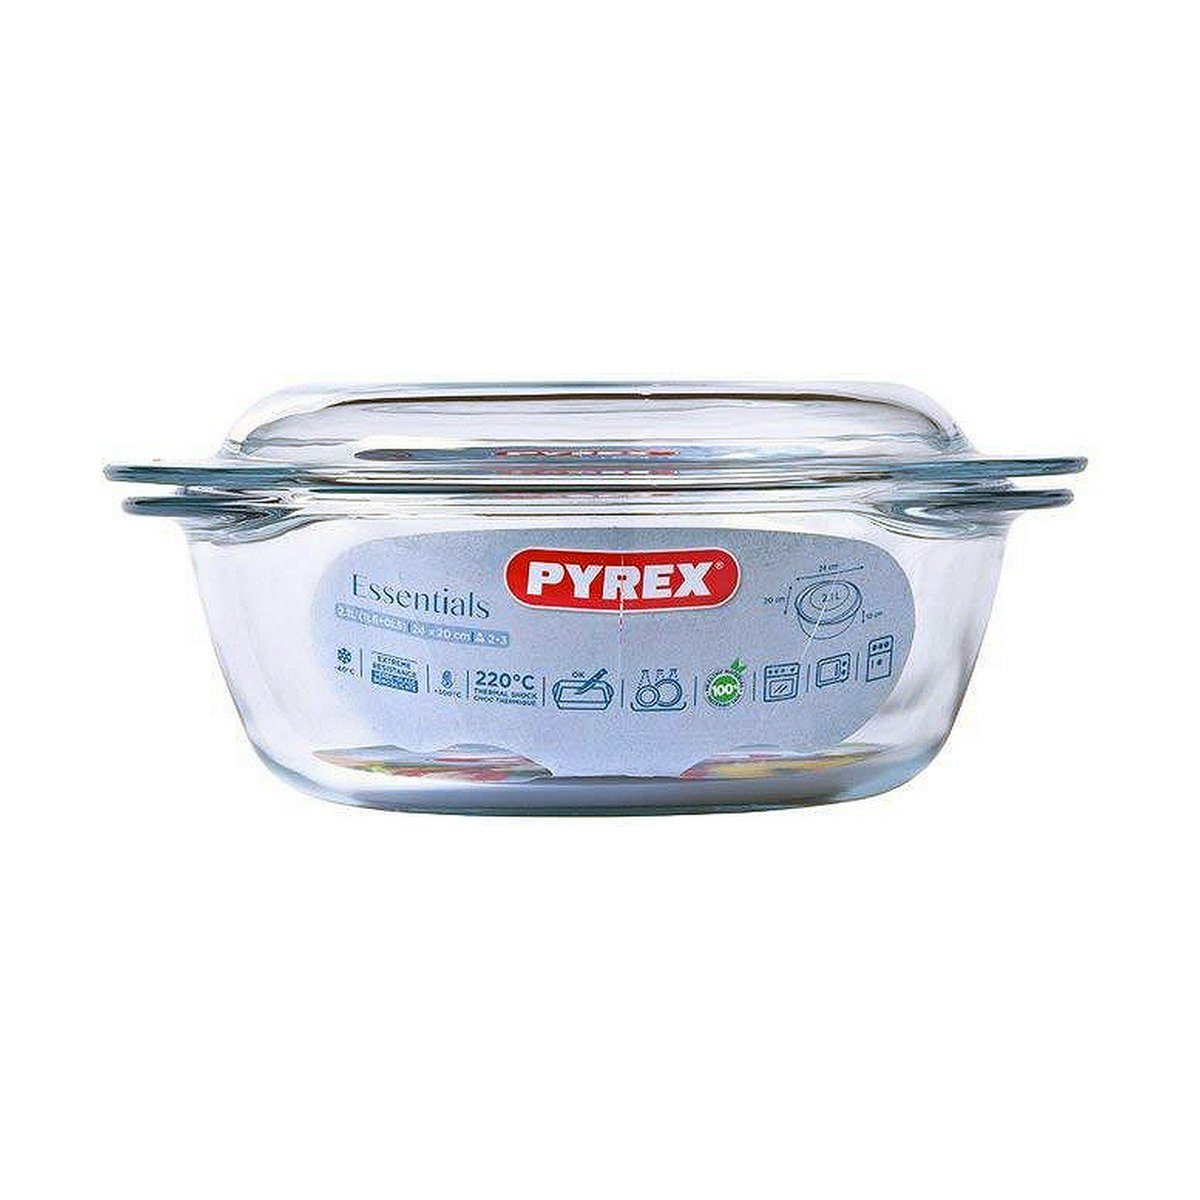 Auflaufform Pyrex Bräter Durchsichtig mit Deckel L 0,5 Topf, Auflaufform Pyrex Glas Glas Glas